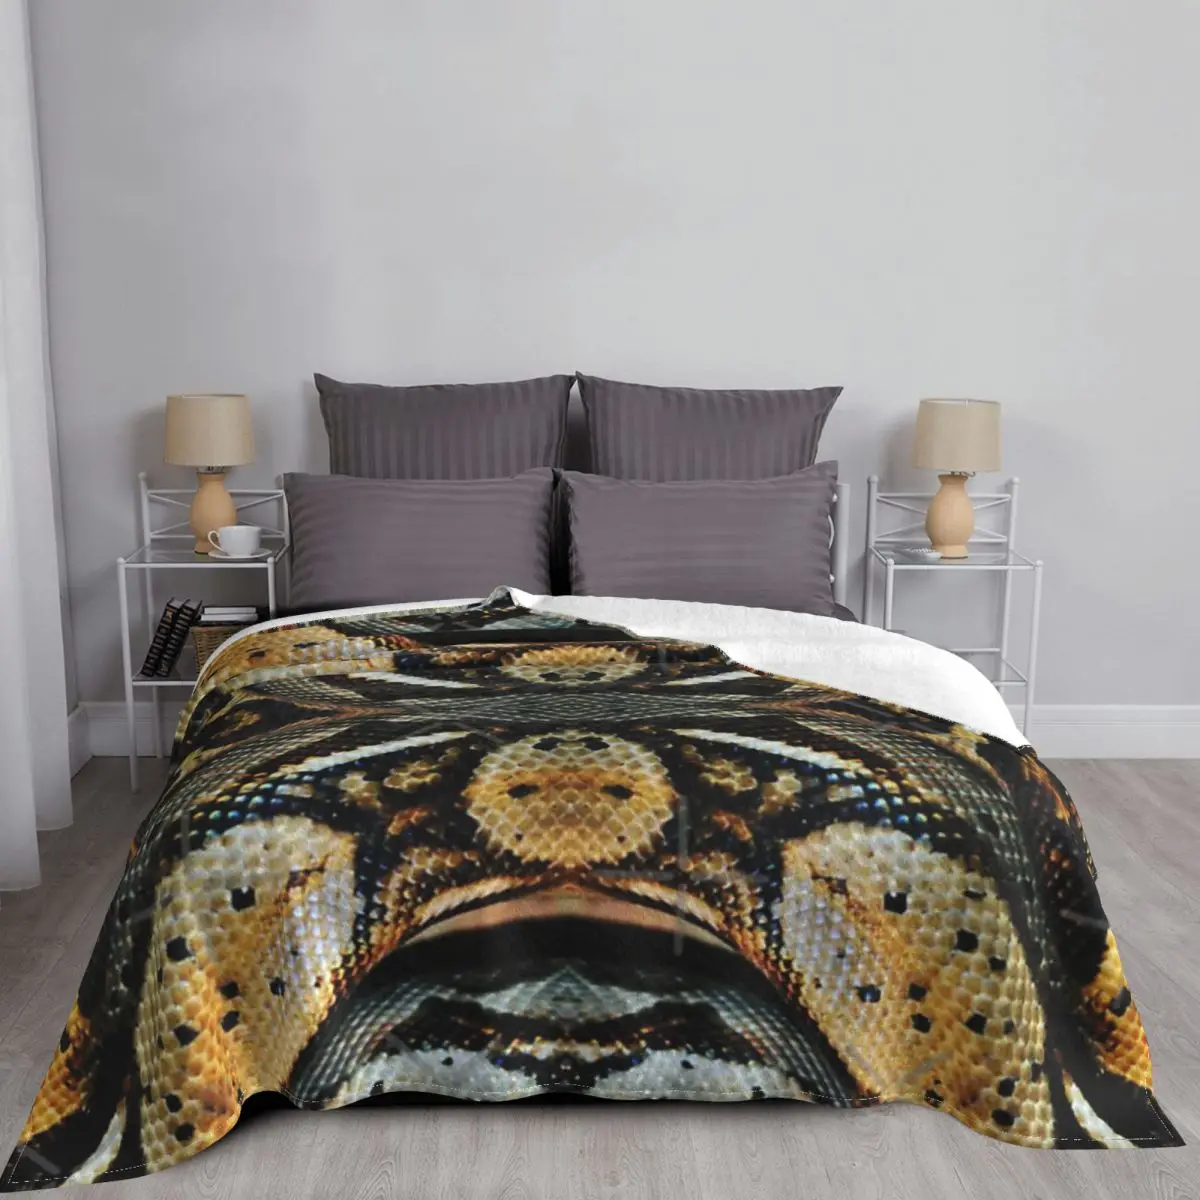 Одеяло Red Tailed Boa покрывало для кровати искусственное муслиновое пледовое одеяло с